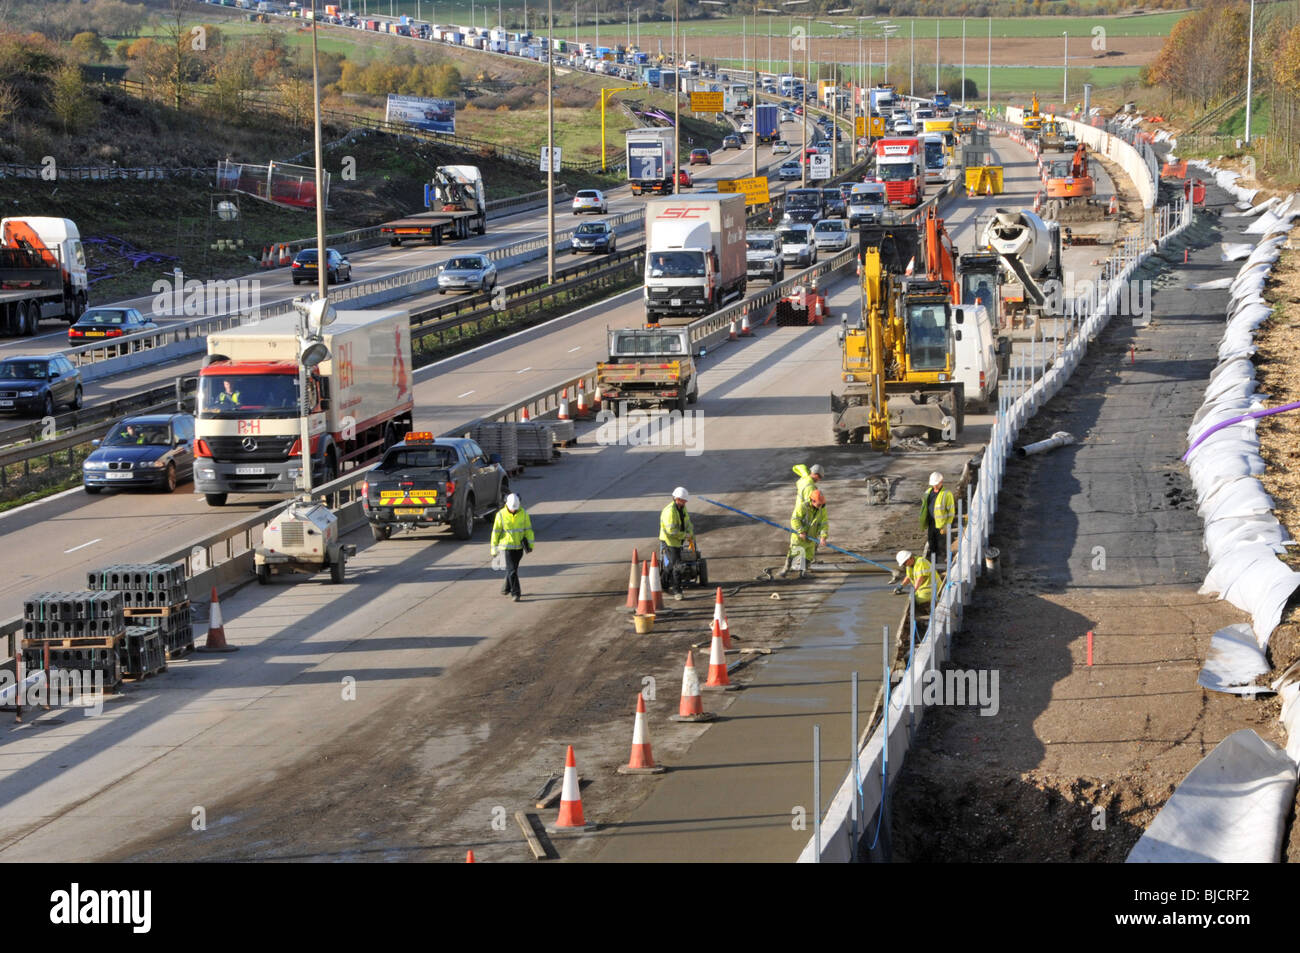 Ingegneria civile lavori stradali lavoratori edili e macchine che lavorano in cantiere M25 costruzione di un'autostrada a quattro corsie totale Essex paesaggio Inghilterra Regno Unito Foto Stock